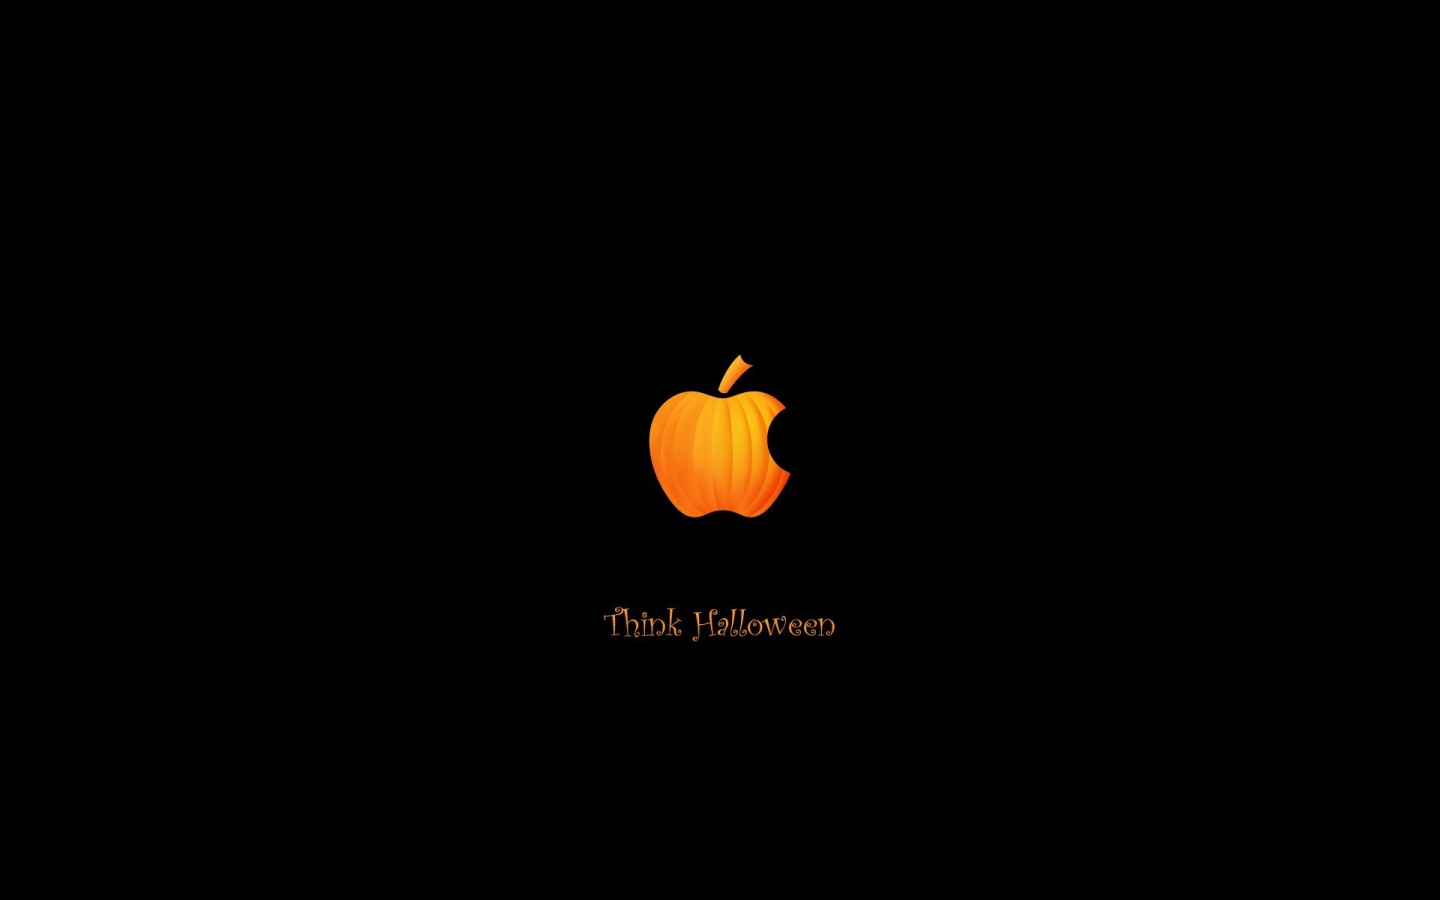 Pumpkin Apple for 1440 x 900 widescreen resolution